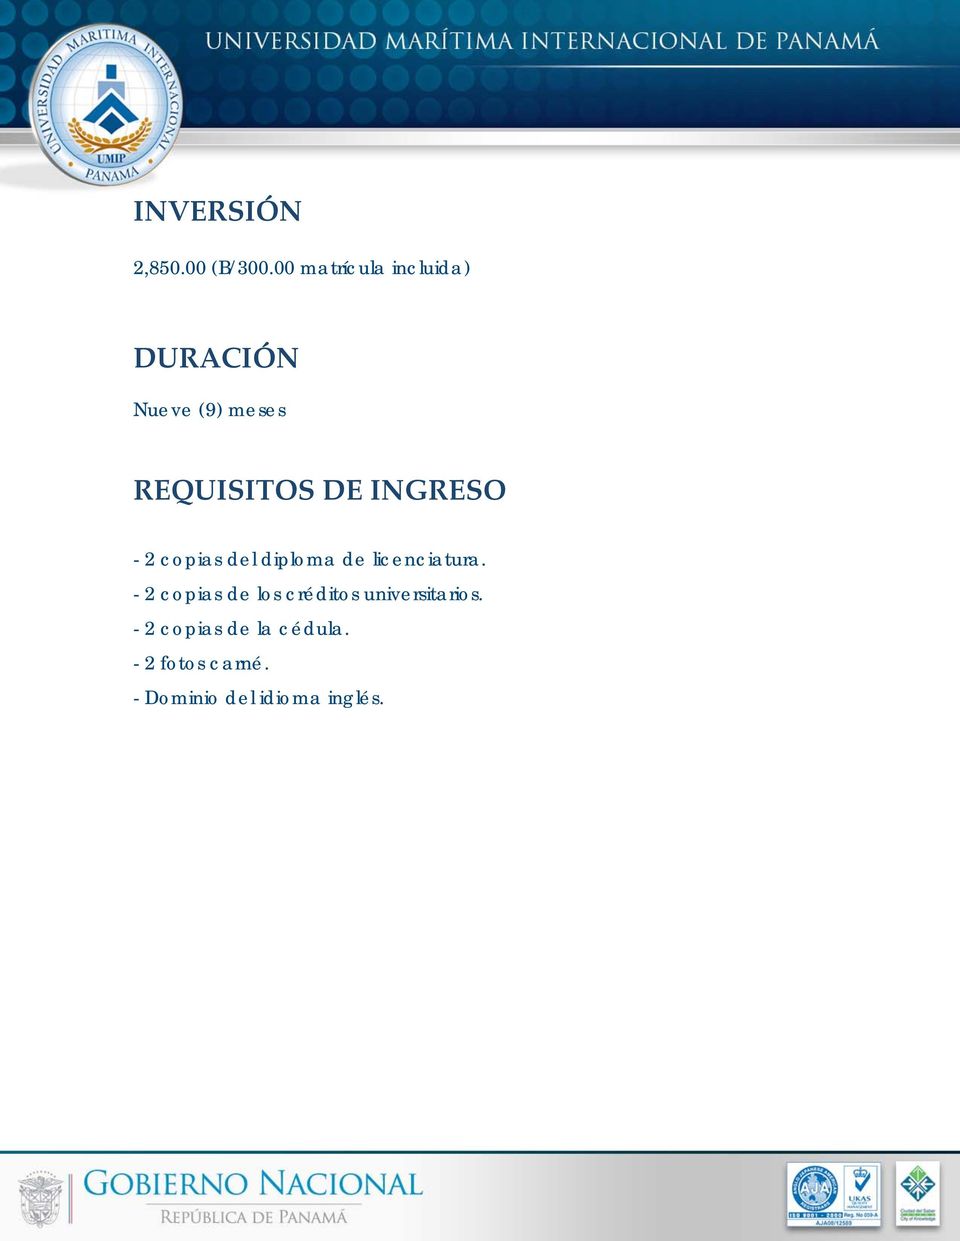 INGRESO - 2 copias del diploma de licenciatura.